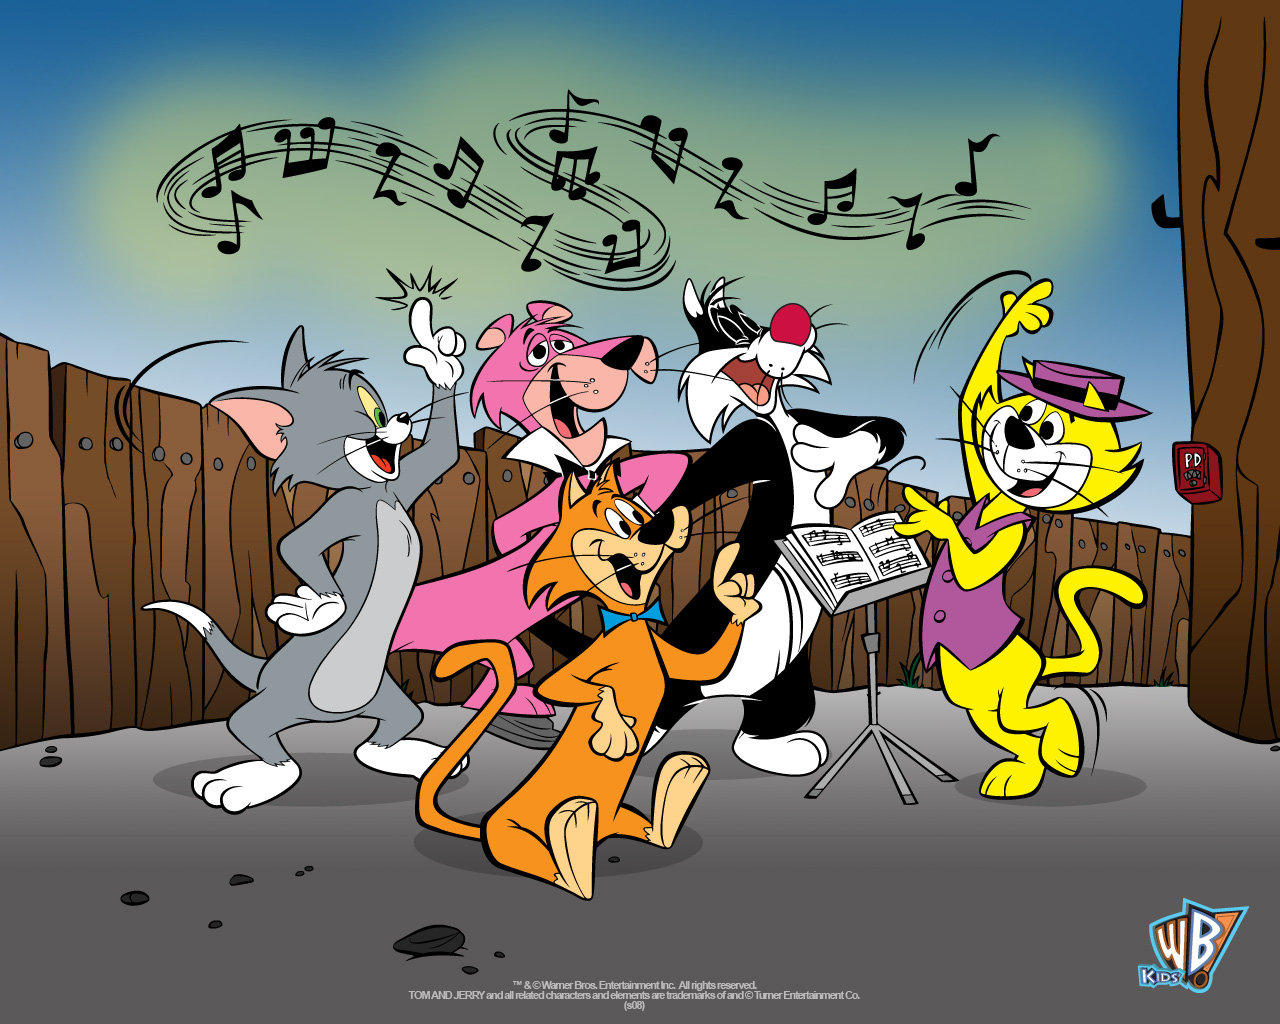 http://2.bp.blogspot.com/-NmUhcjw5KAc/TmKr7Sxl7qI/AAAAAAAAAbQ/yulIZsT_ARc/s1600/Musical_Cats_Wallpaper_by_CartoonNothing.jpg